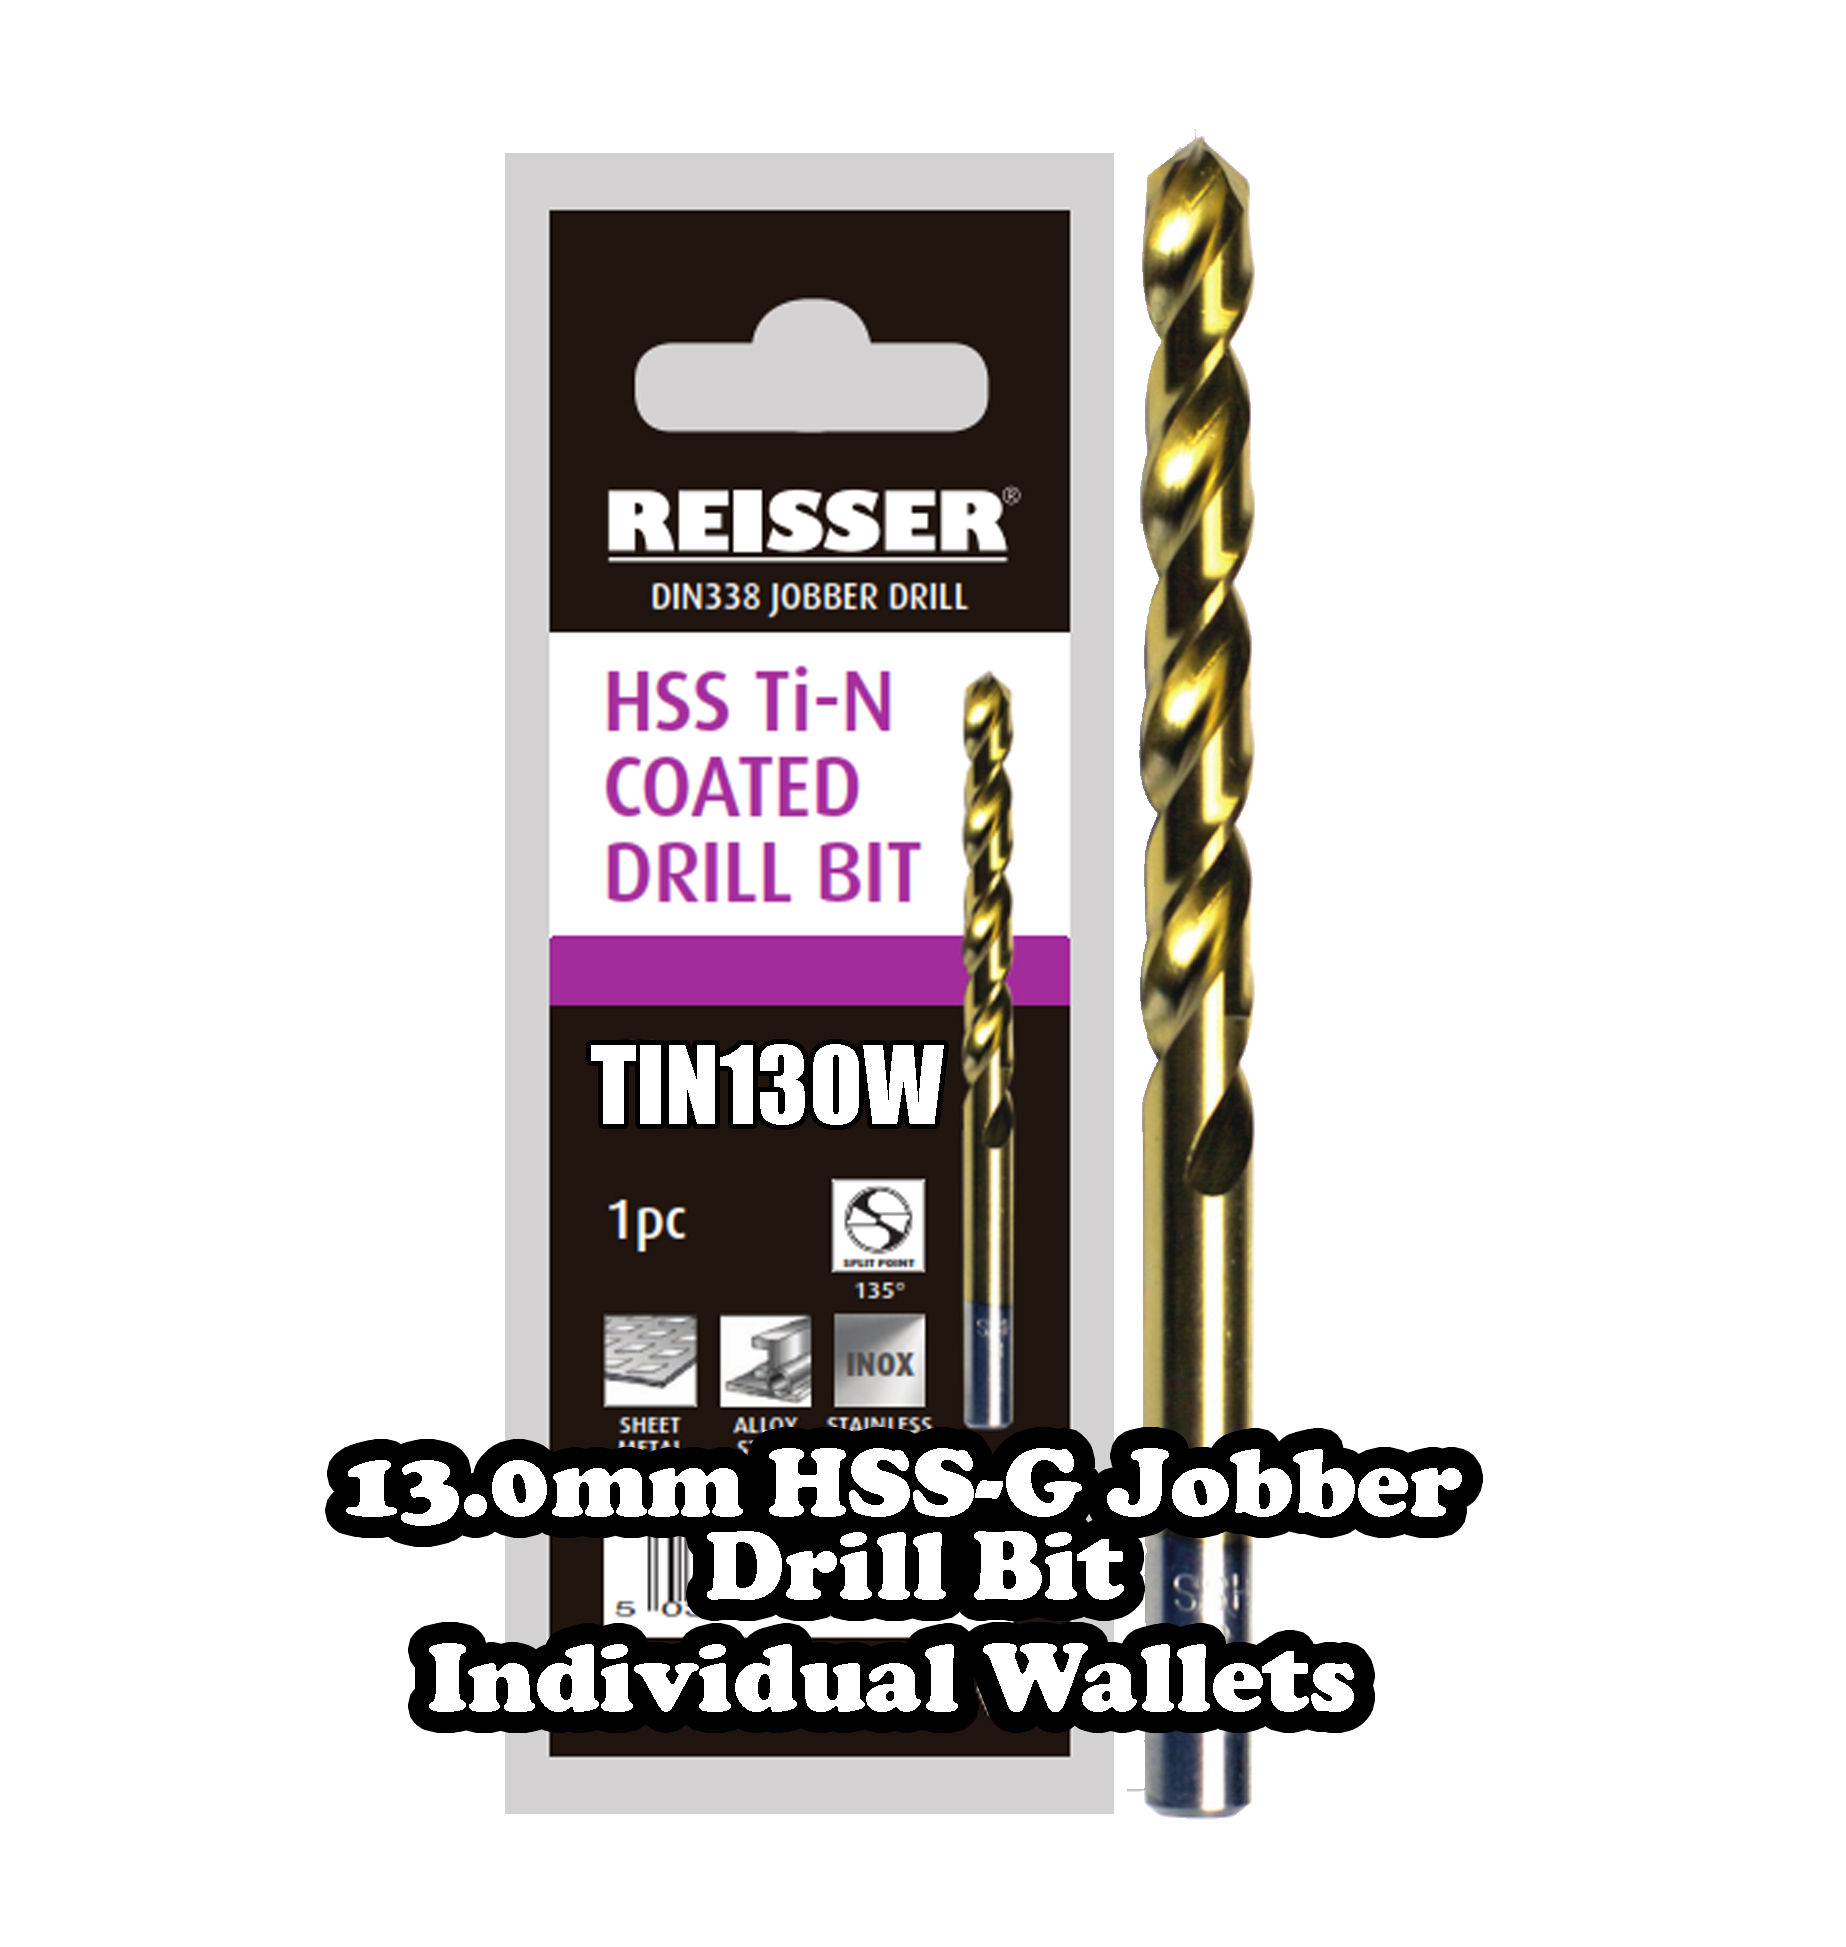 13.0mm HSS Jobber Drill Bit (SINGLE WALLET)